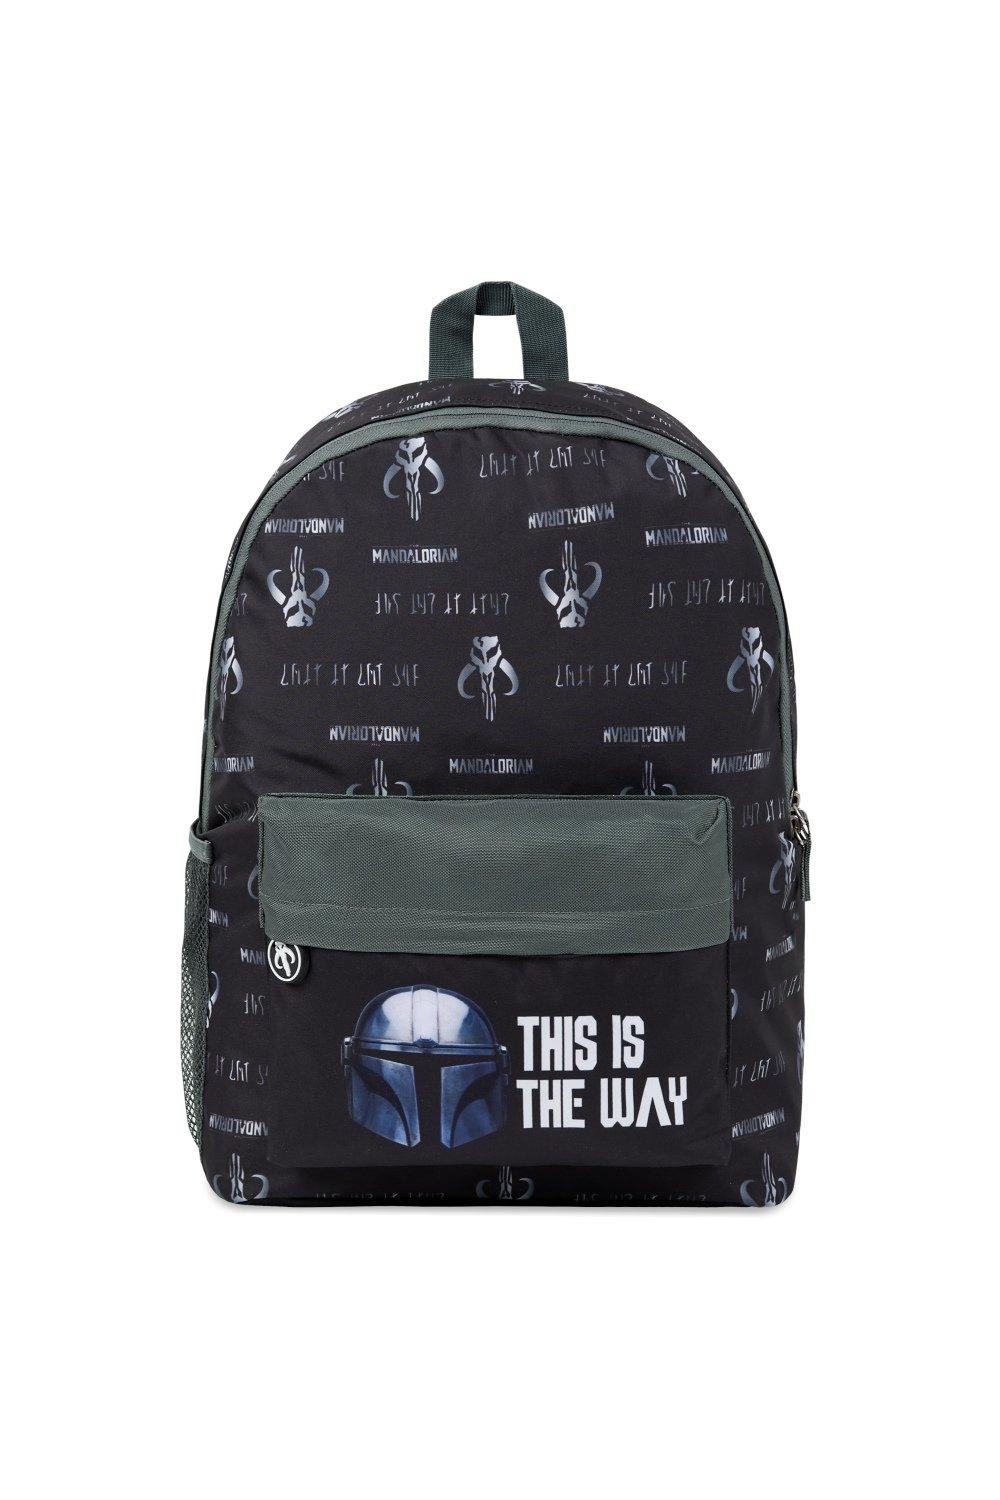 Мандалорская школьная сумка Star Wars, черный командный рюкзак beaver для девочек и мальчиков забавный дорожный ранец для подростков школьная сумка